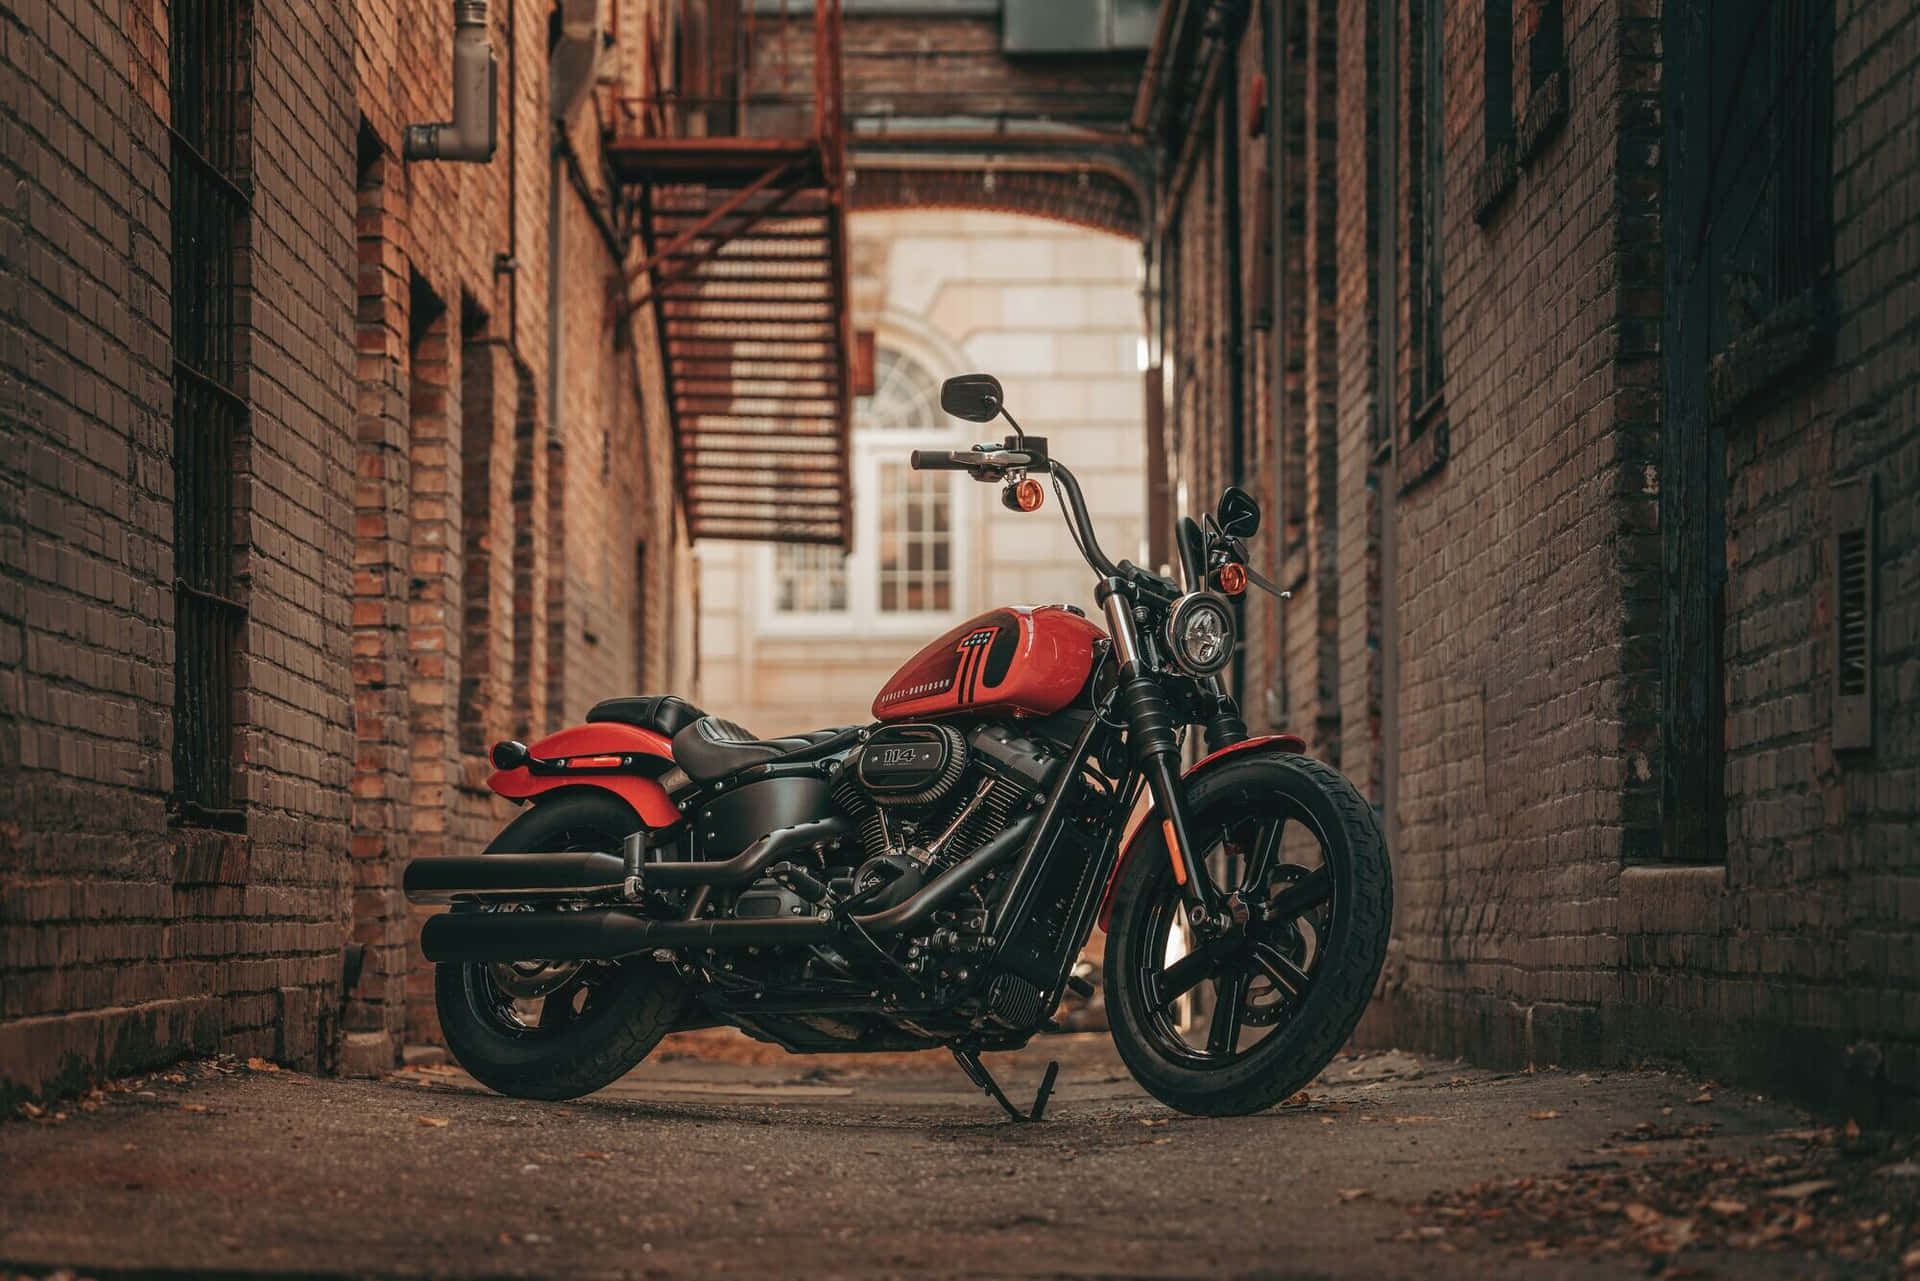 Attköra På De Öppna Vägarna På En Harley Davidson